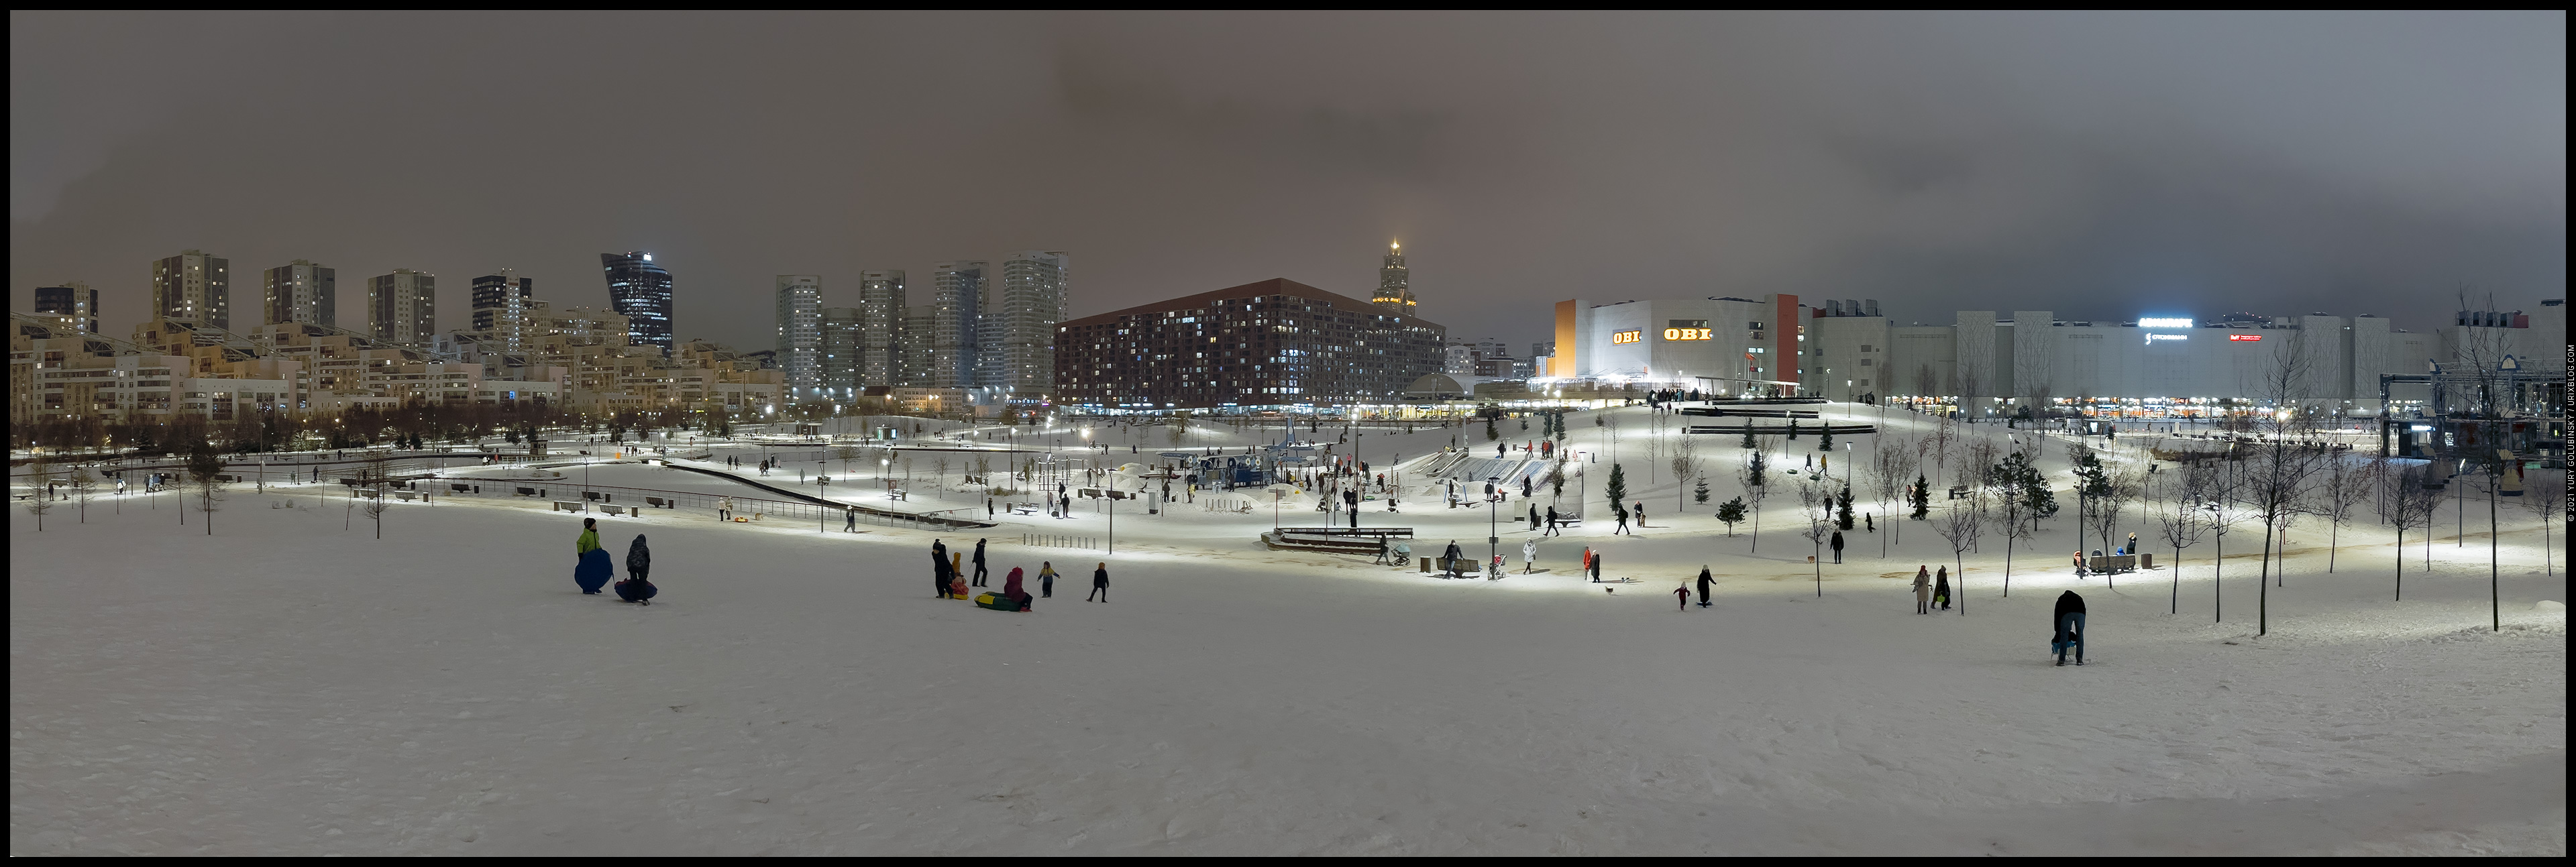 Москва, Ходынское поле, Display P3, Россия, снег, панорама, зима, горки, горка, вечер, ночь